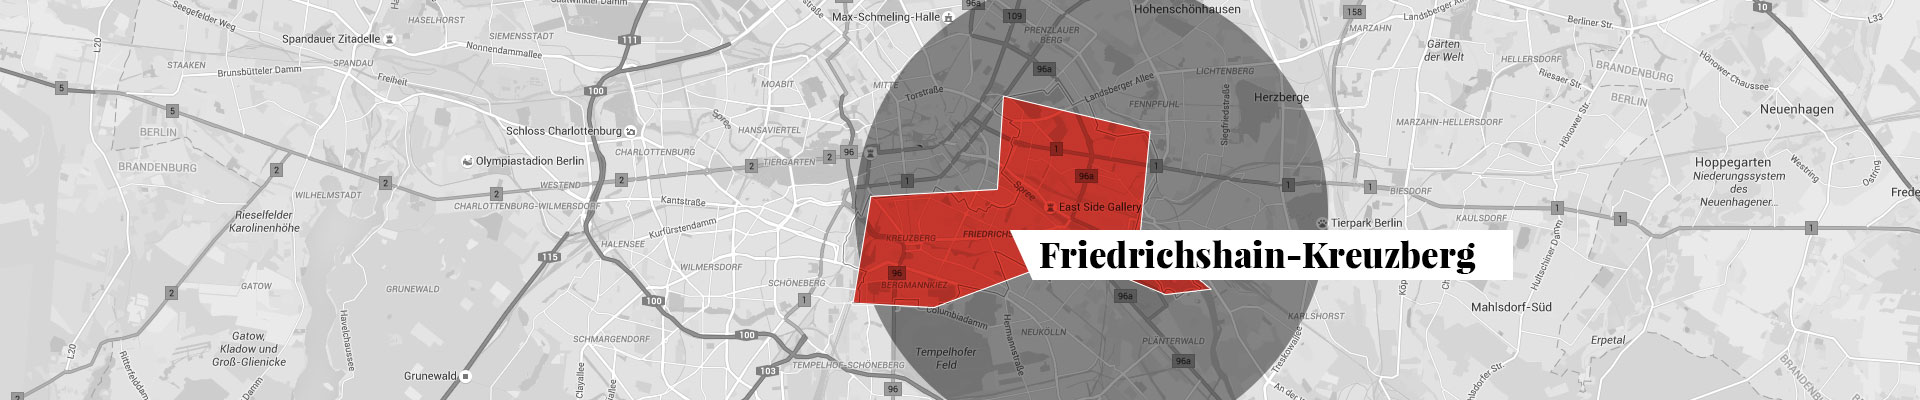 Friedrichshain-Kreuzberg Stadtplan